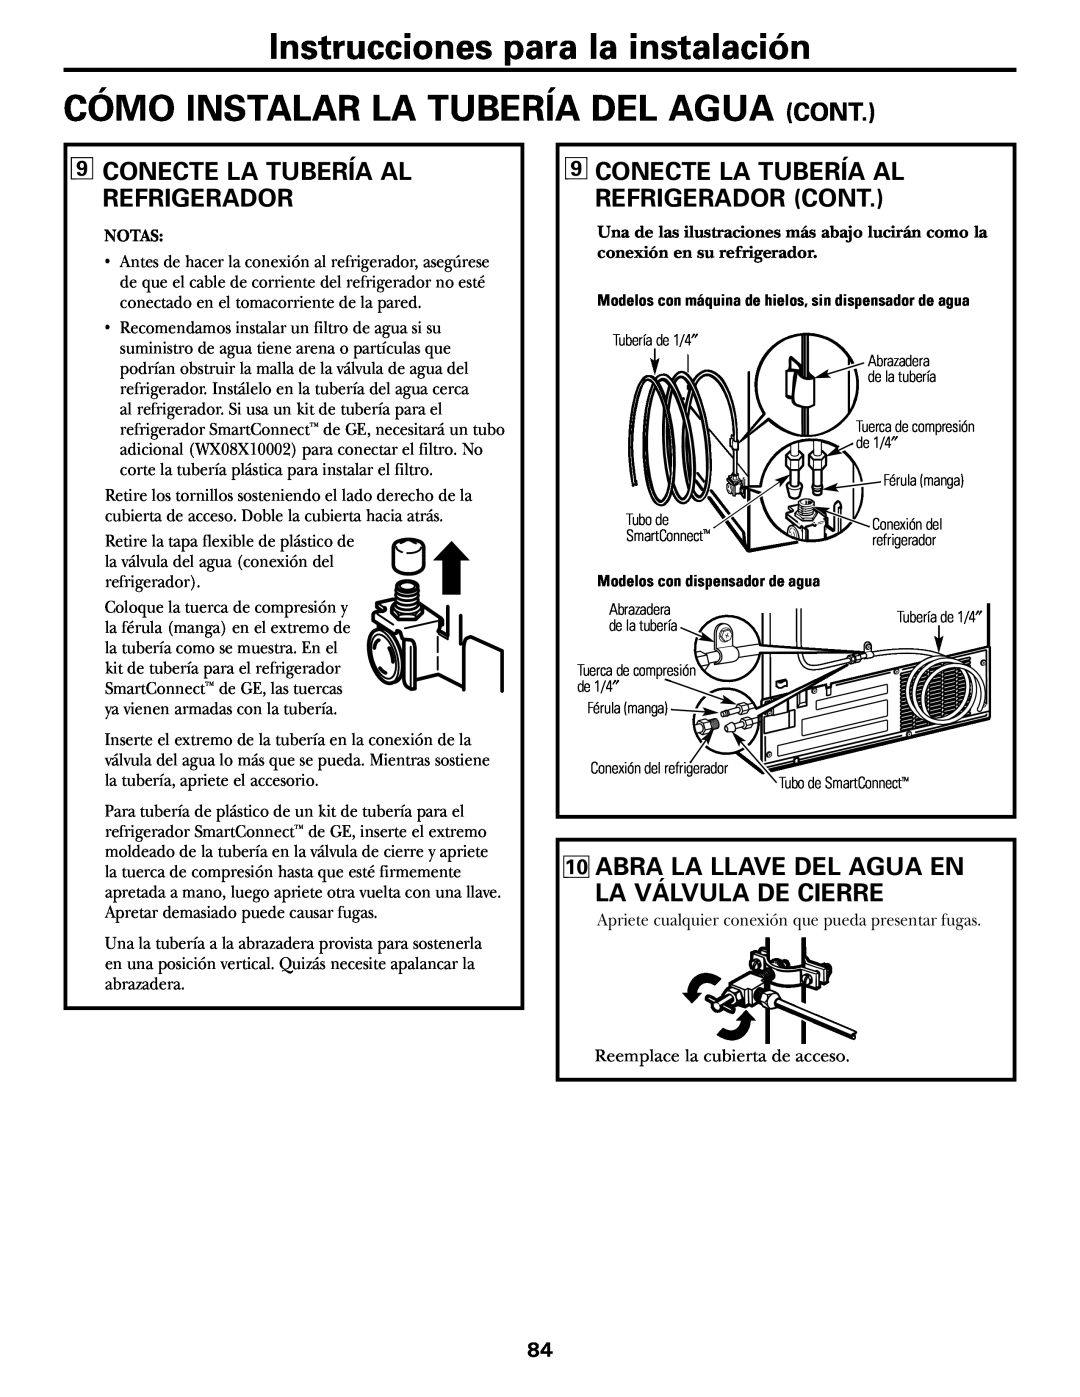 GE 18, 19 operating instructions Conecte La Tubería Al Refrigerador, Abra La Llave Del Agua En La Válvula De Cierre 